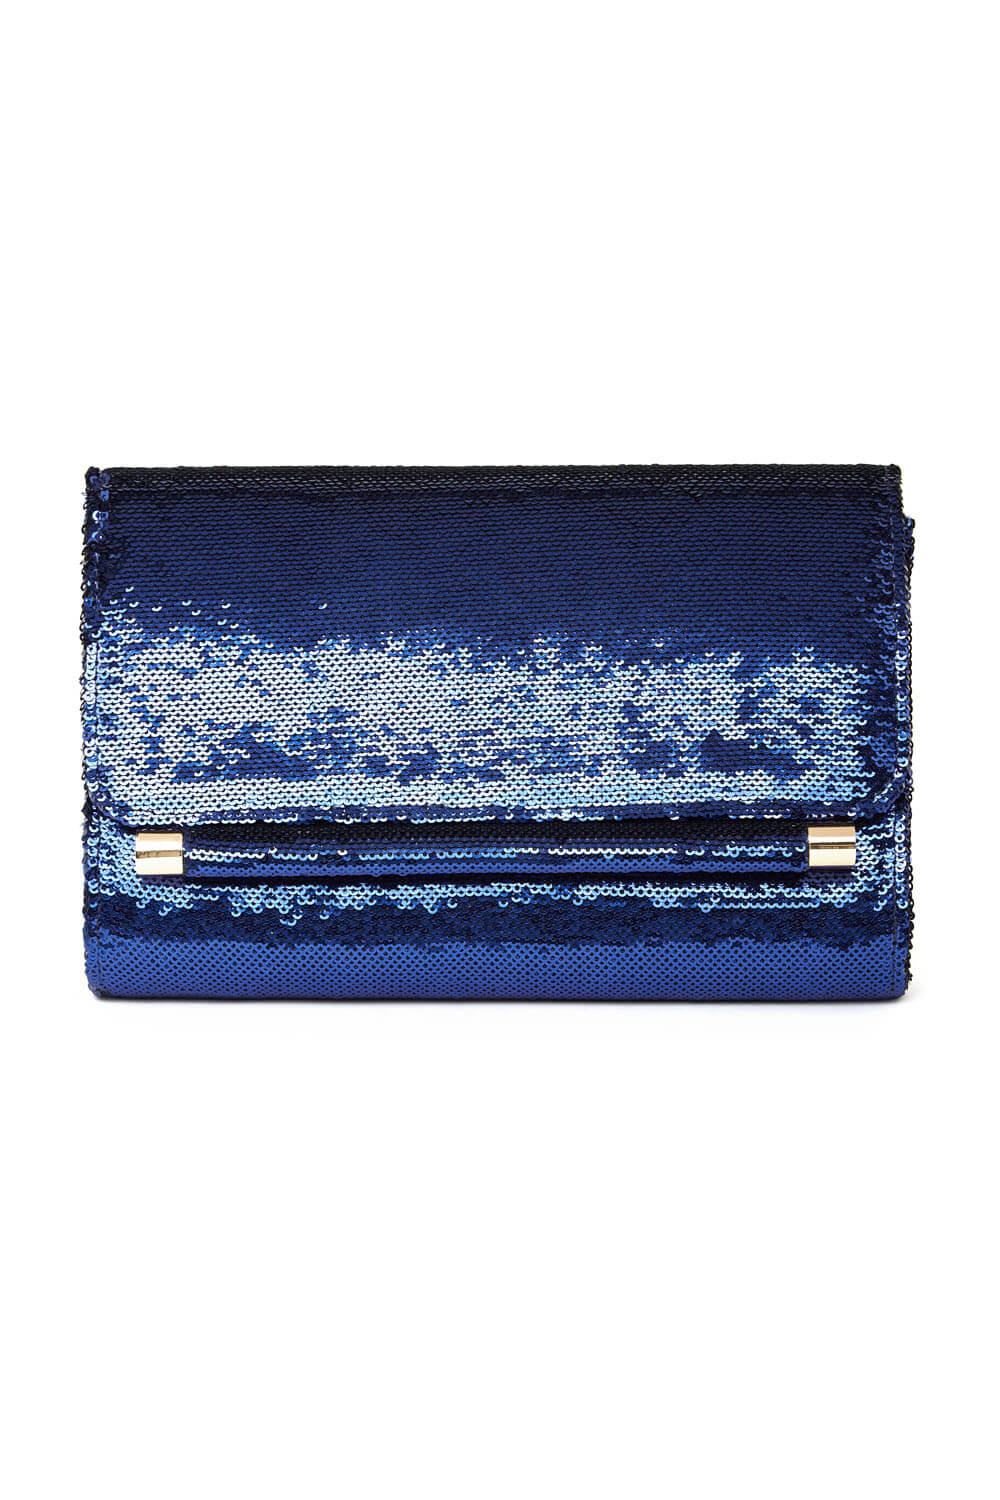 Blue Sequin Foldover Metal Bar Clutch Bag, Image 2 of 5